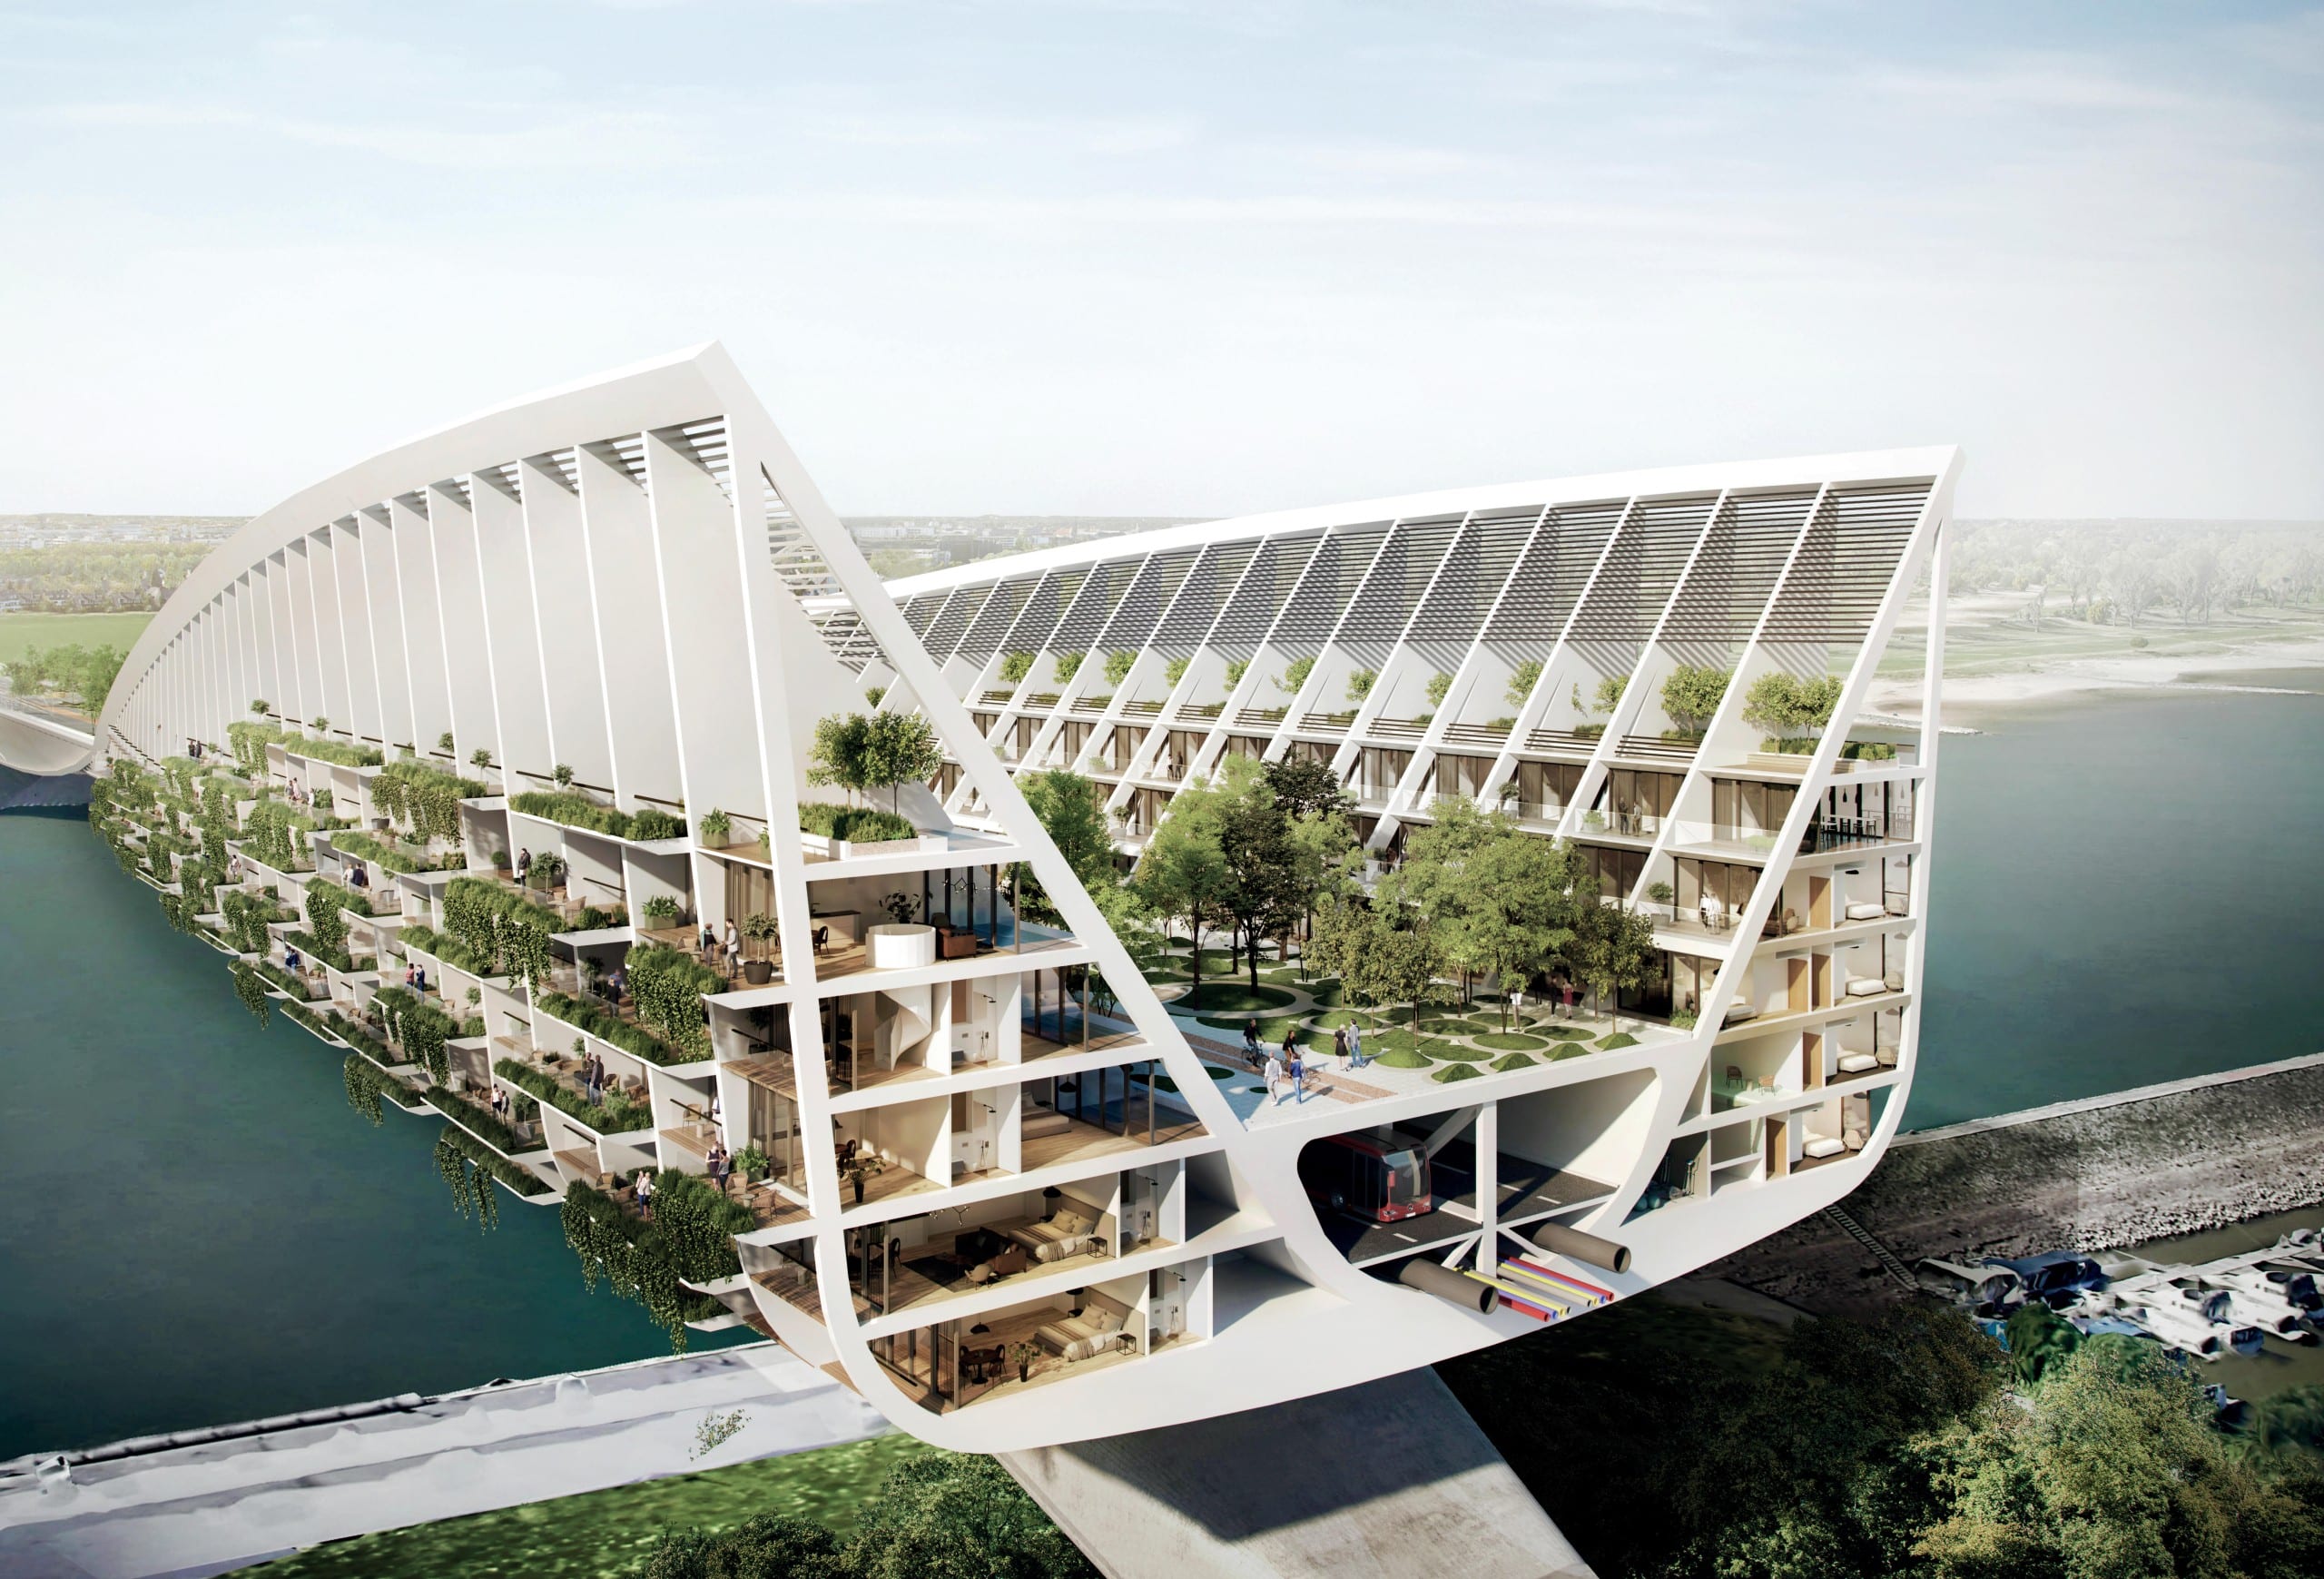 Der Querschnitt zeigt, wie die Green Bridge aufgebaut sein könnte. Copyright Entwurf: RKW Architektur +, Visualisierung: Formtool, Anton Kolev